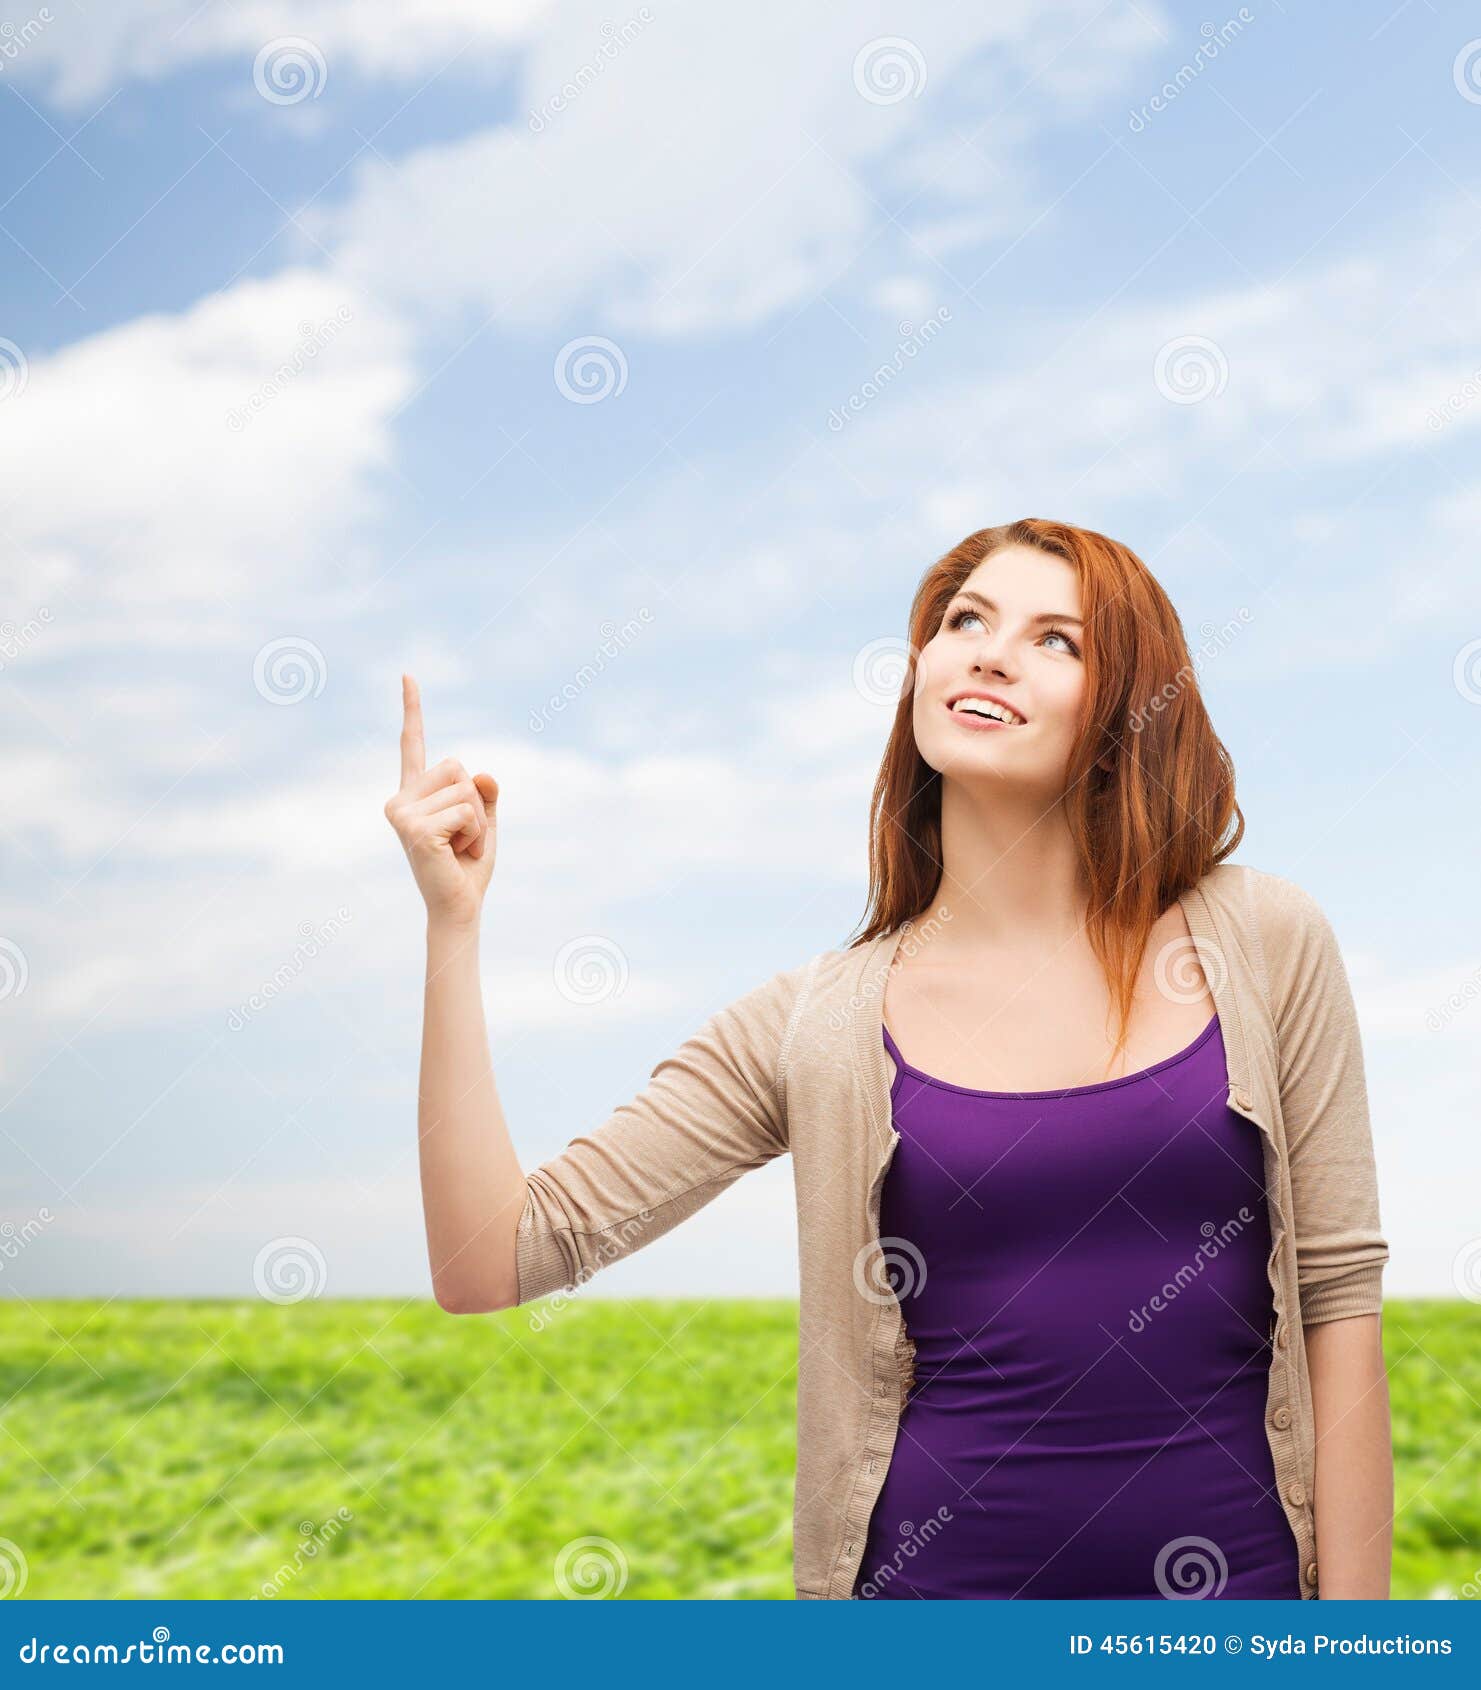 Adolescente sorridente che indica dito su. Concetto della natura, di estate, di gesto e della gente - adolescente sorridente in abbigliamento casual che indica dito su sopra il fondo dell'erba e del cielo blu